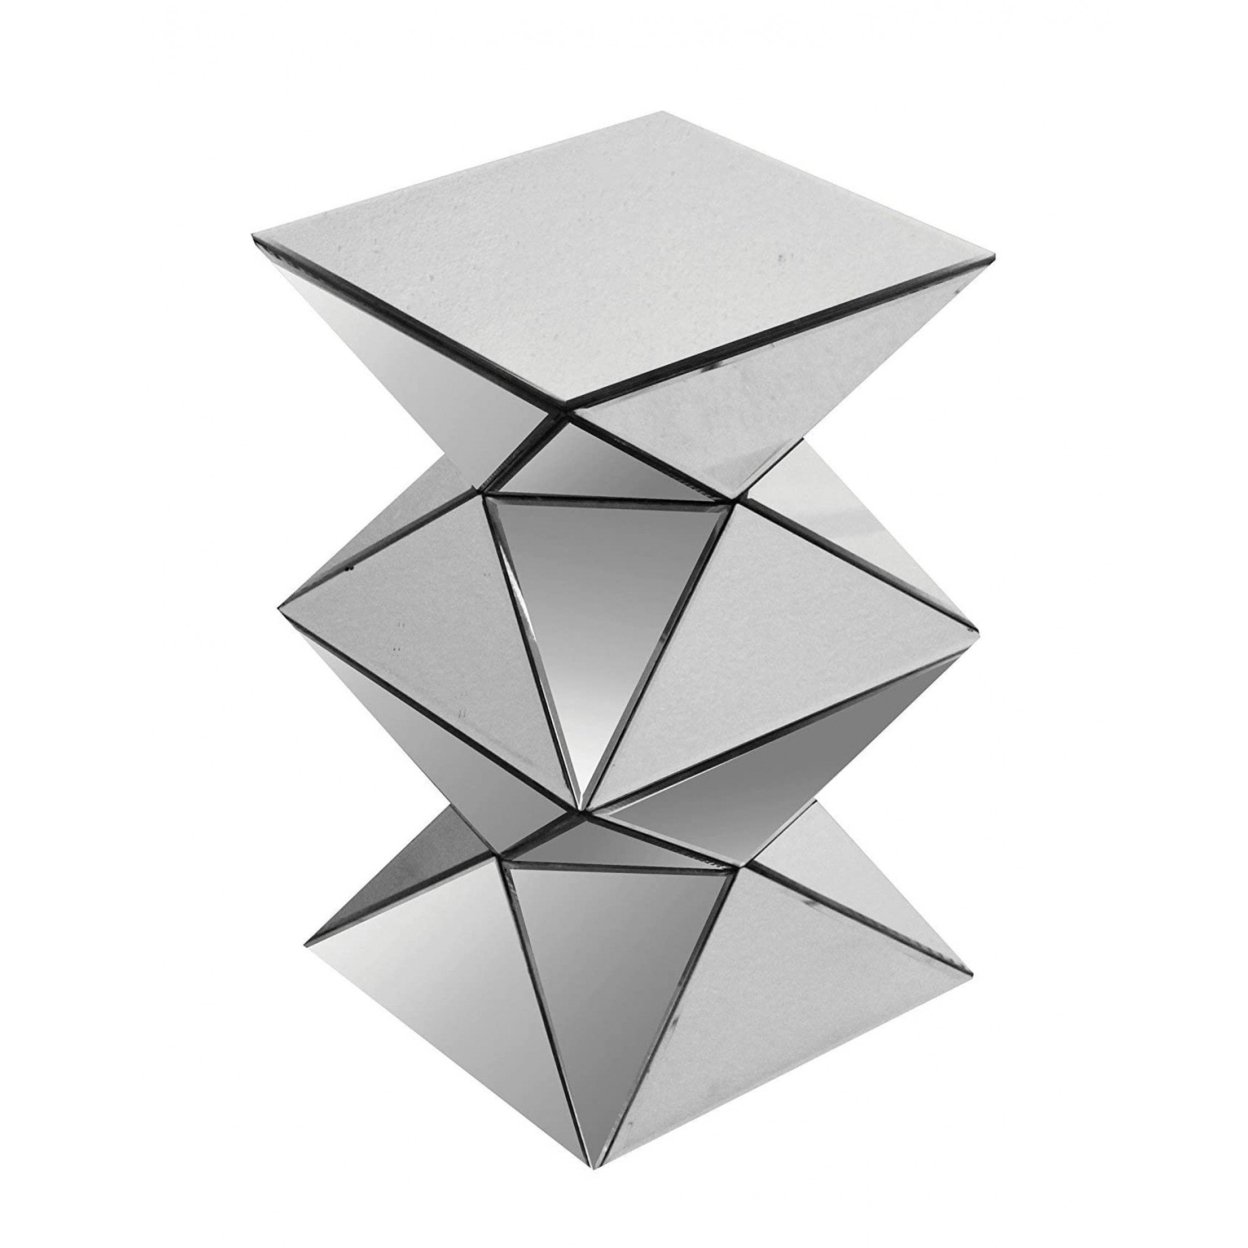 20 Inch Modern End Table, Square Mirror Top, Silver Geometric Pedestal Base- Saltoro Sherpi